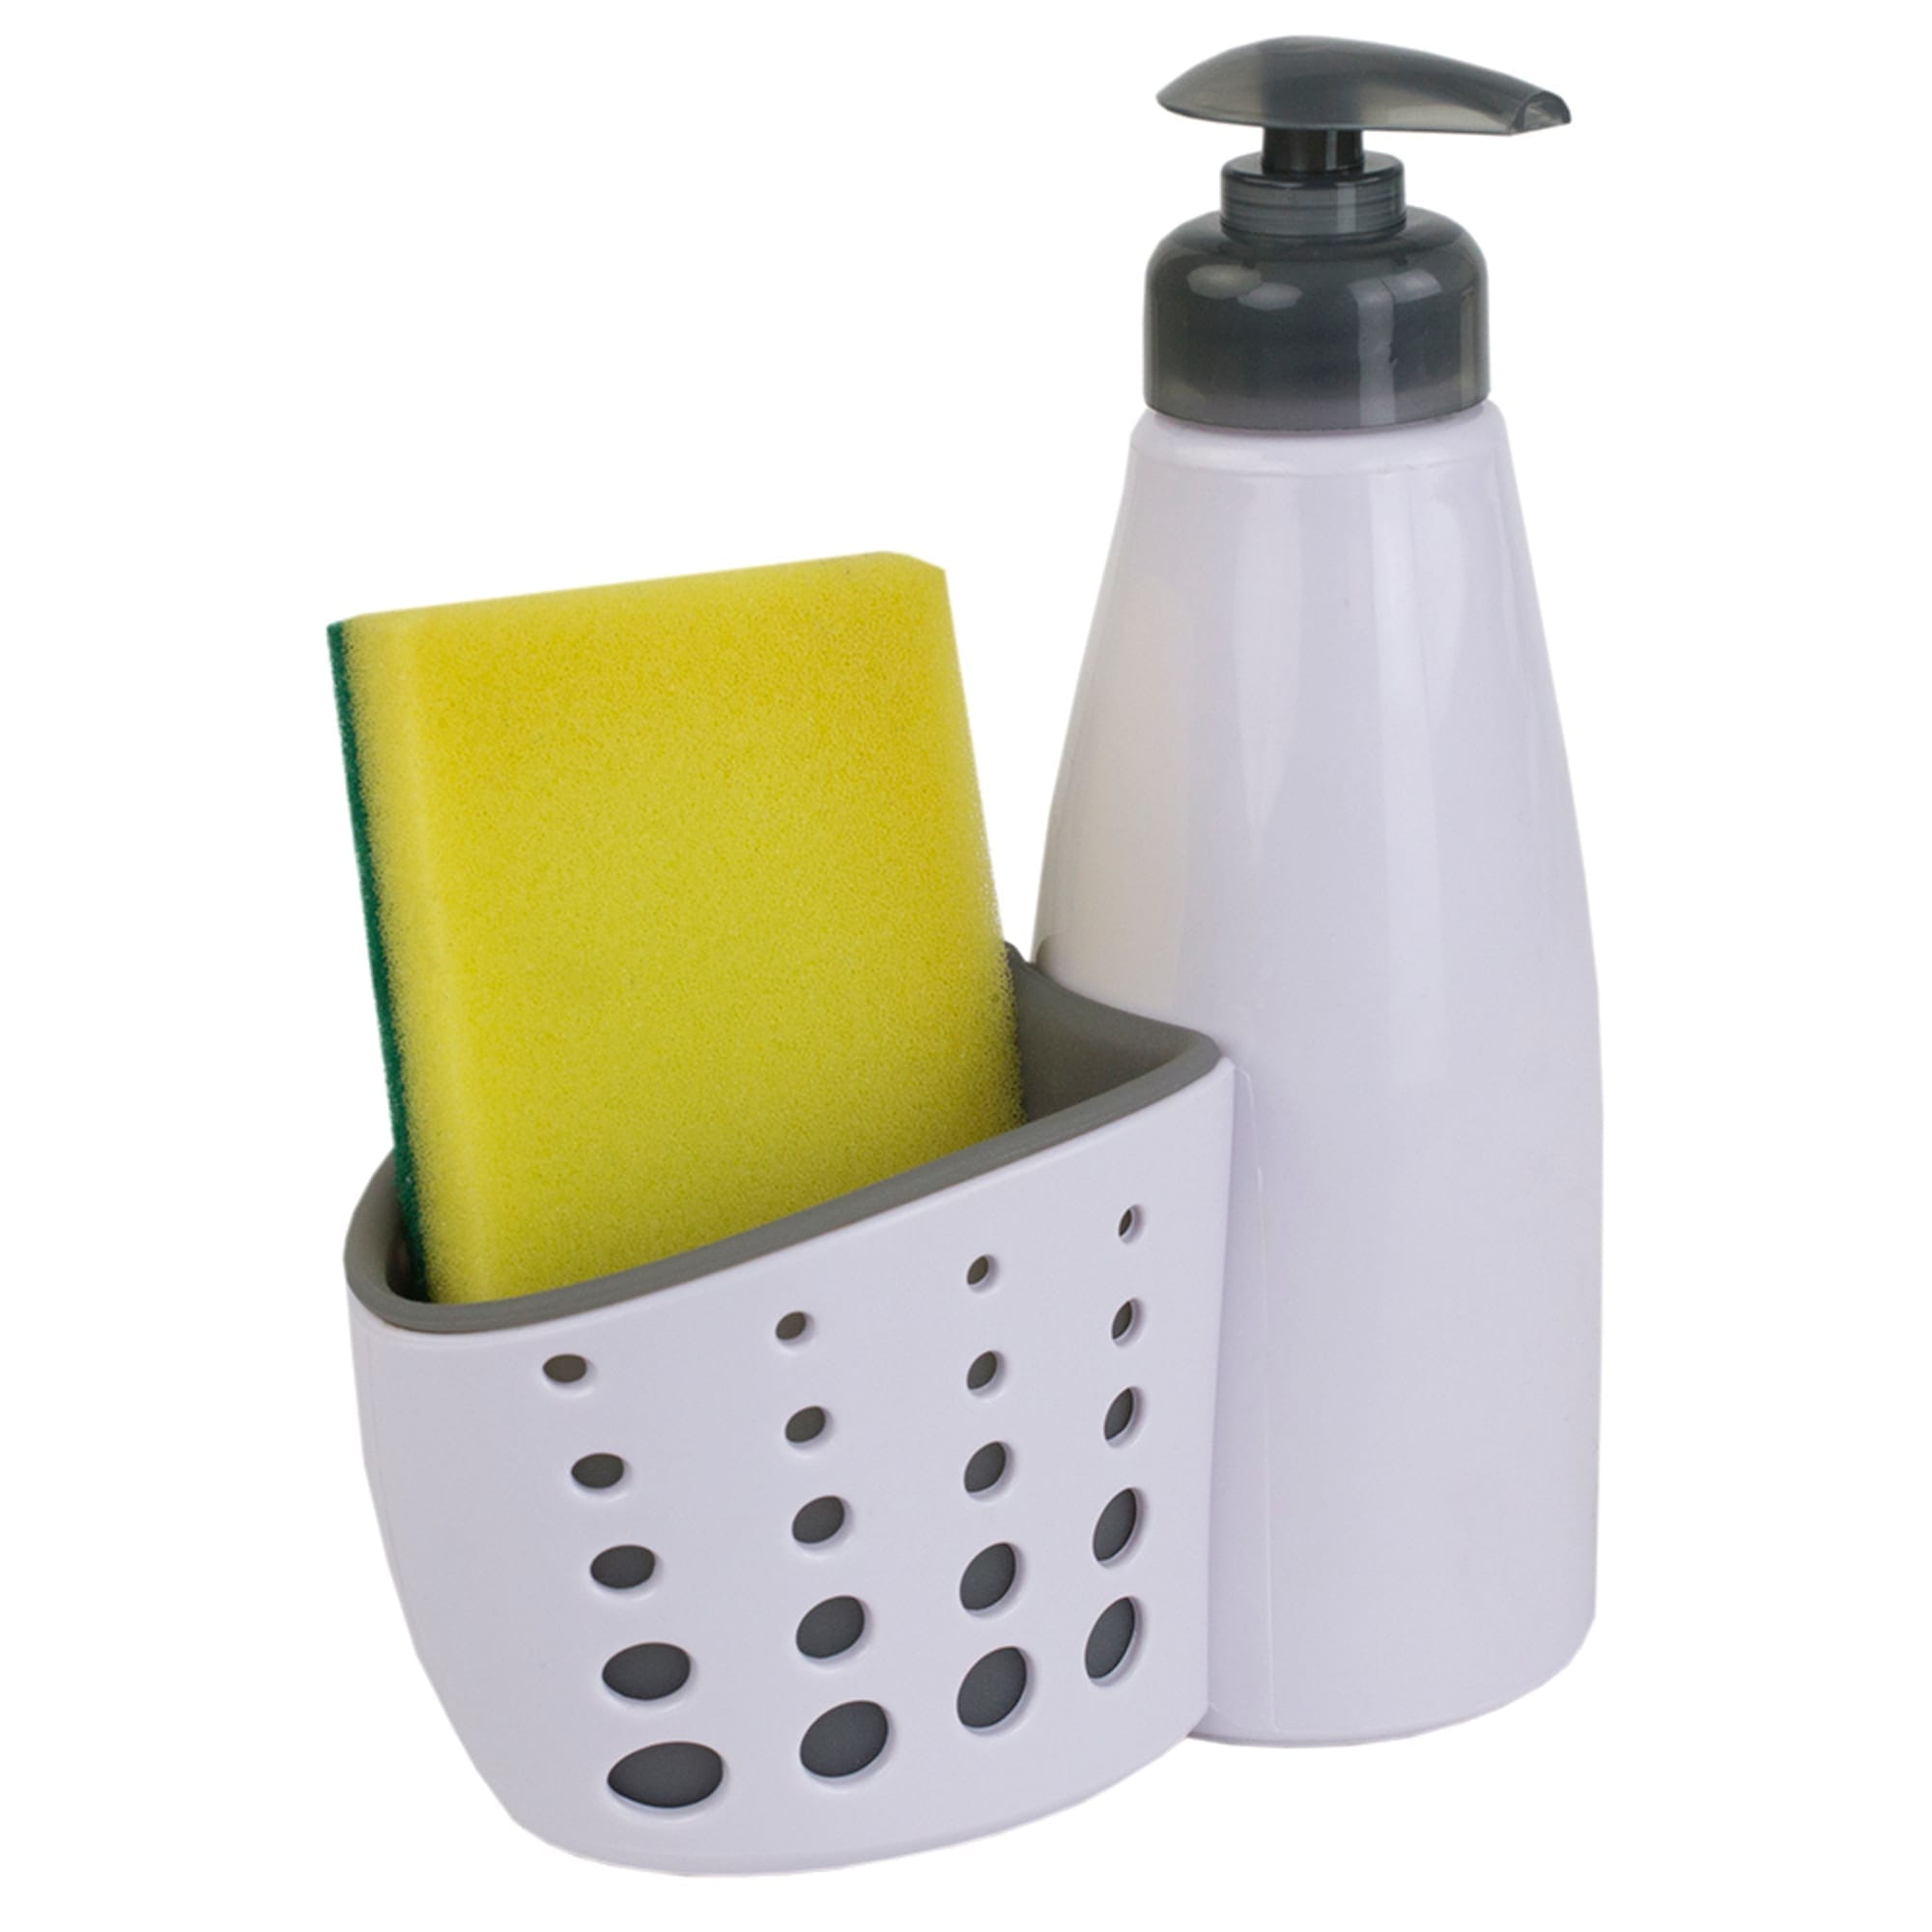 Home Basics Soap Dispenser with Sponge Holder, White $3.00 EACH, CASE PACK OF 24